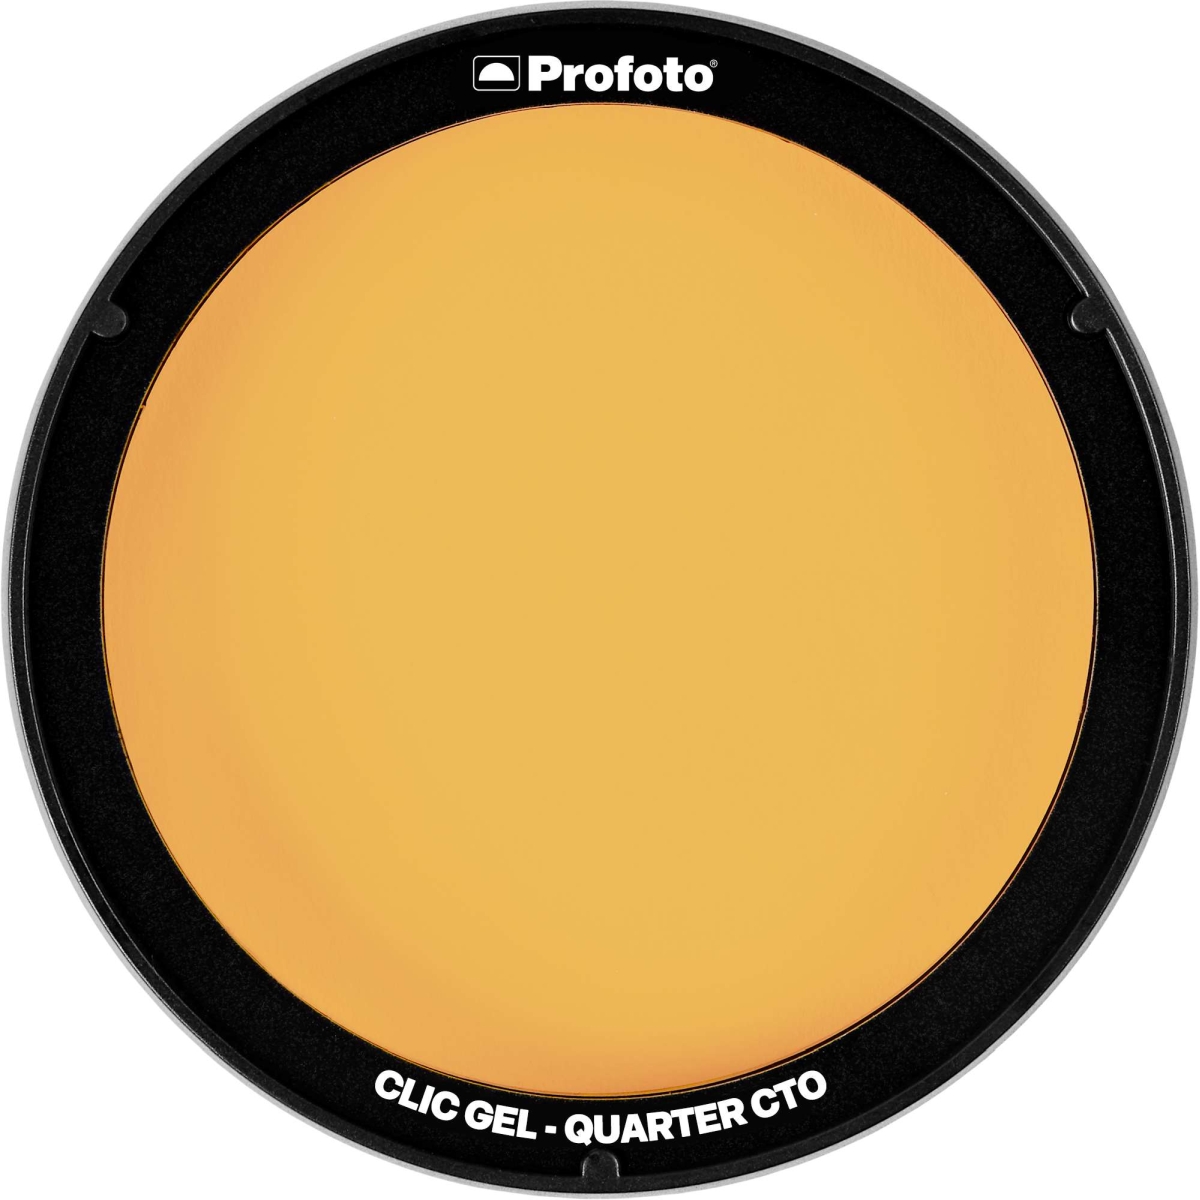 Profoto Clic Gel Quarter CTO